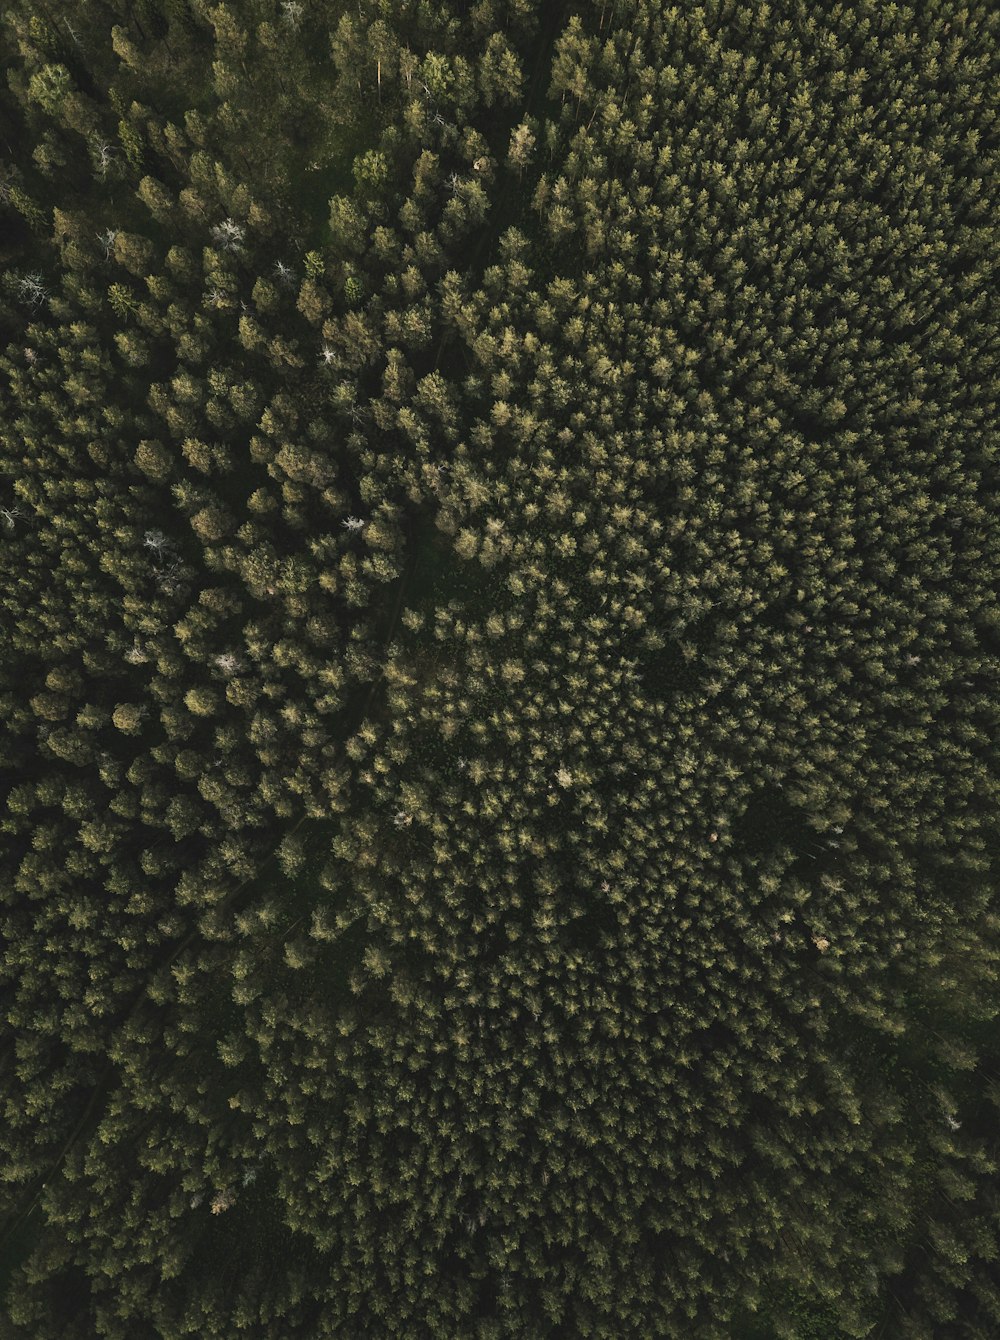 Fotografia aerea di alti alberi verdi